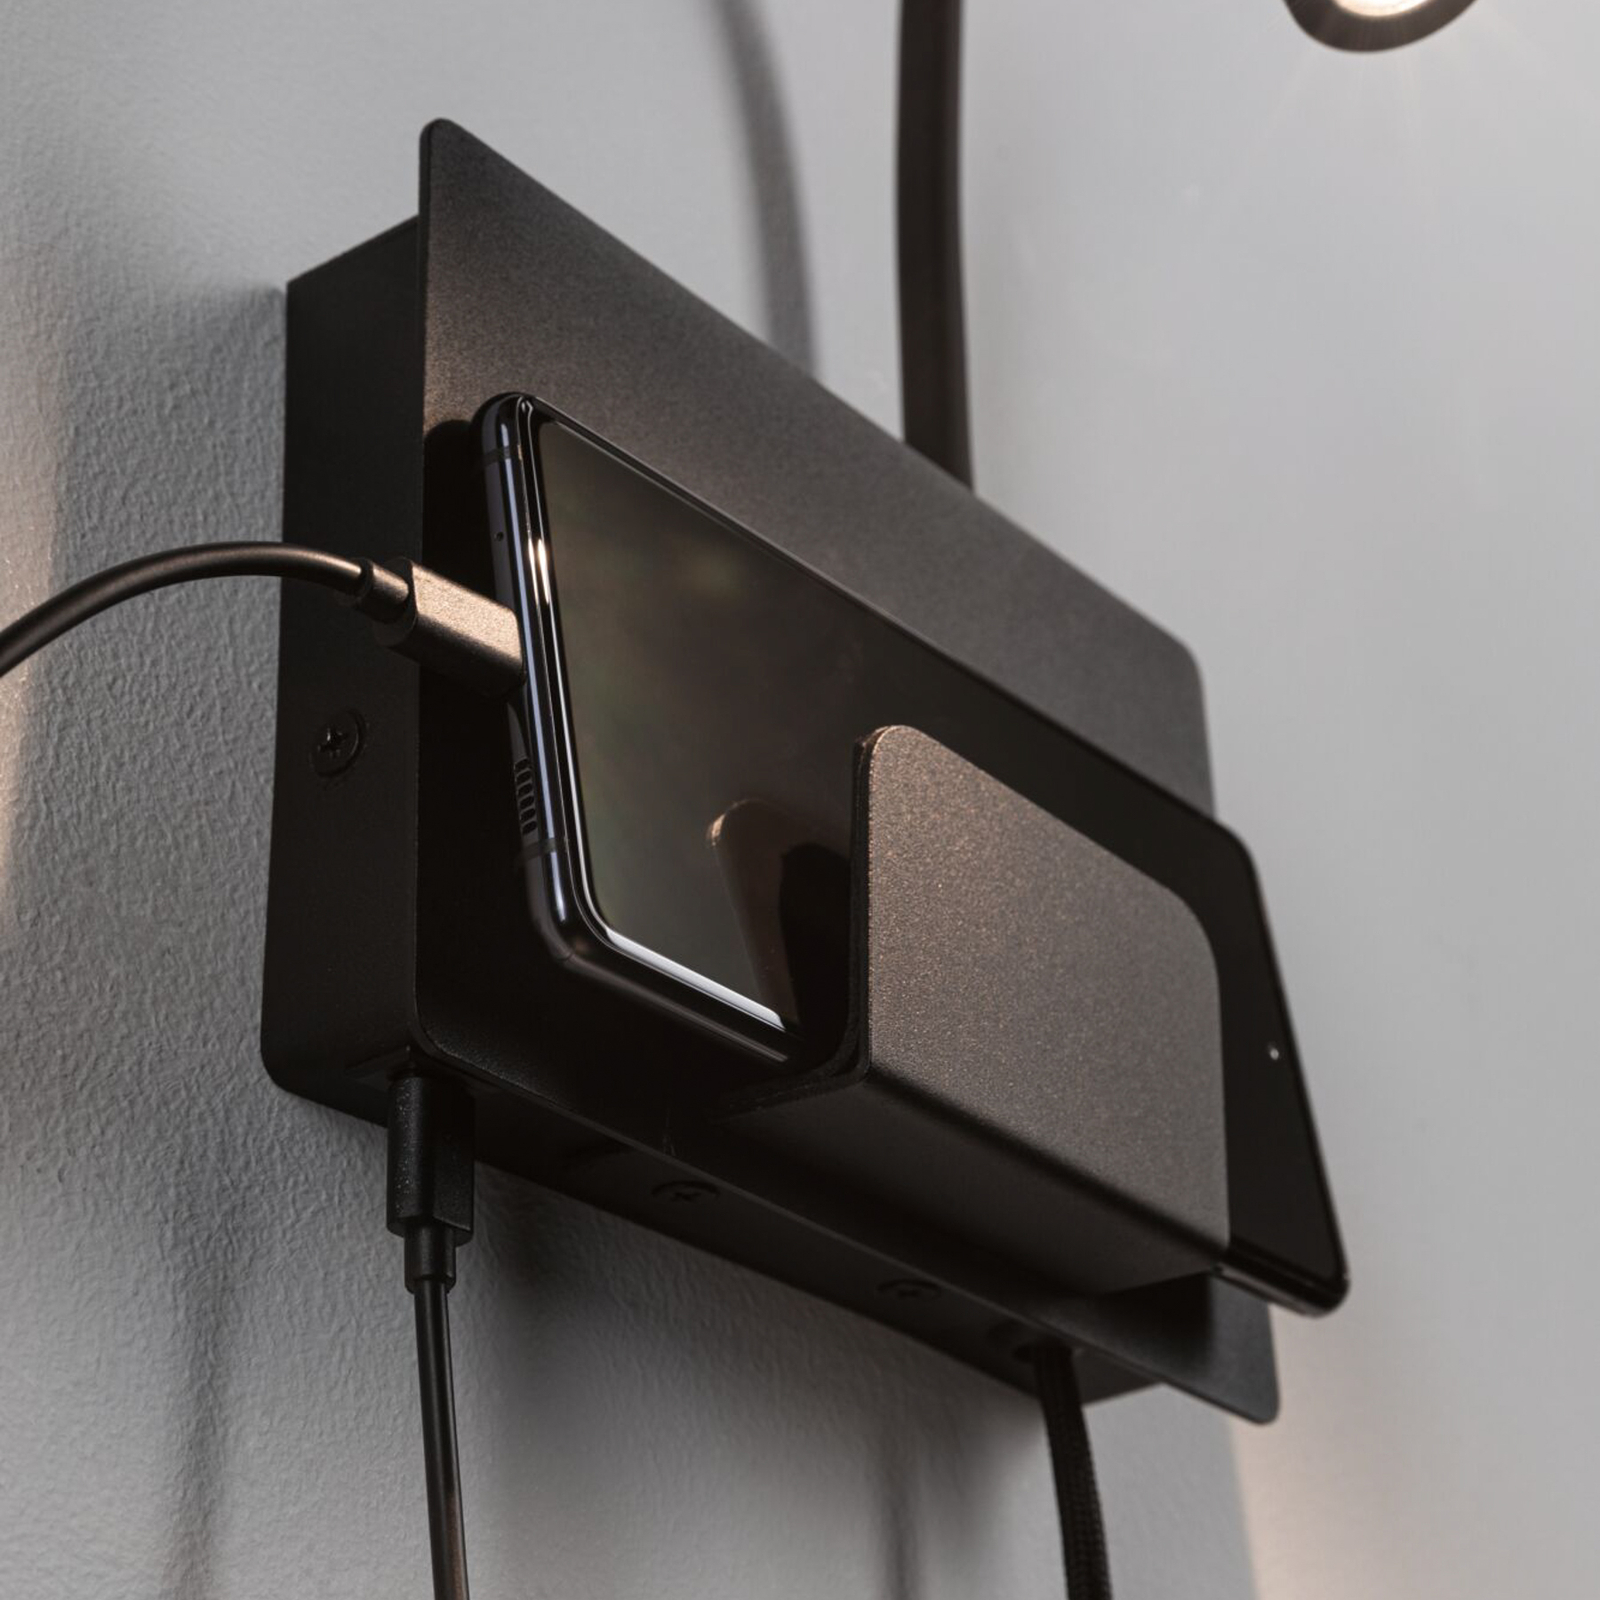 Paulmann Halina USB LED стенна лампа, гъвкаво рамо, черна